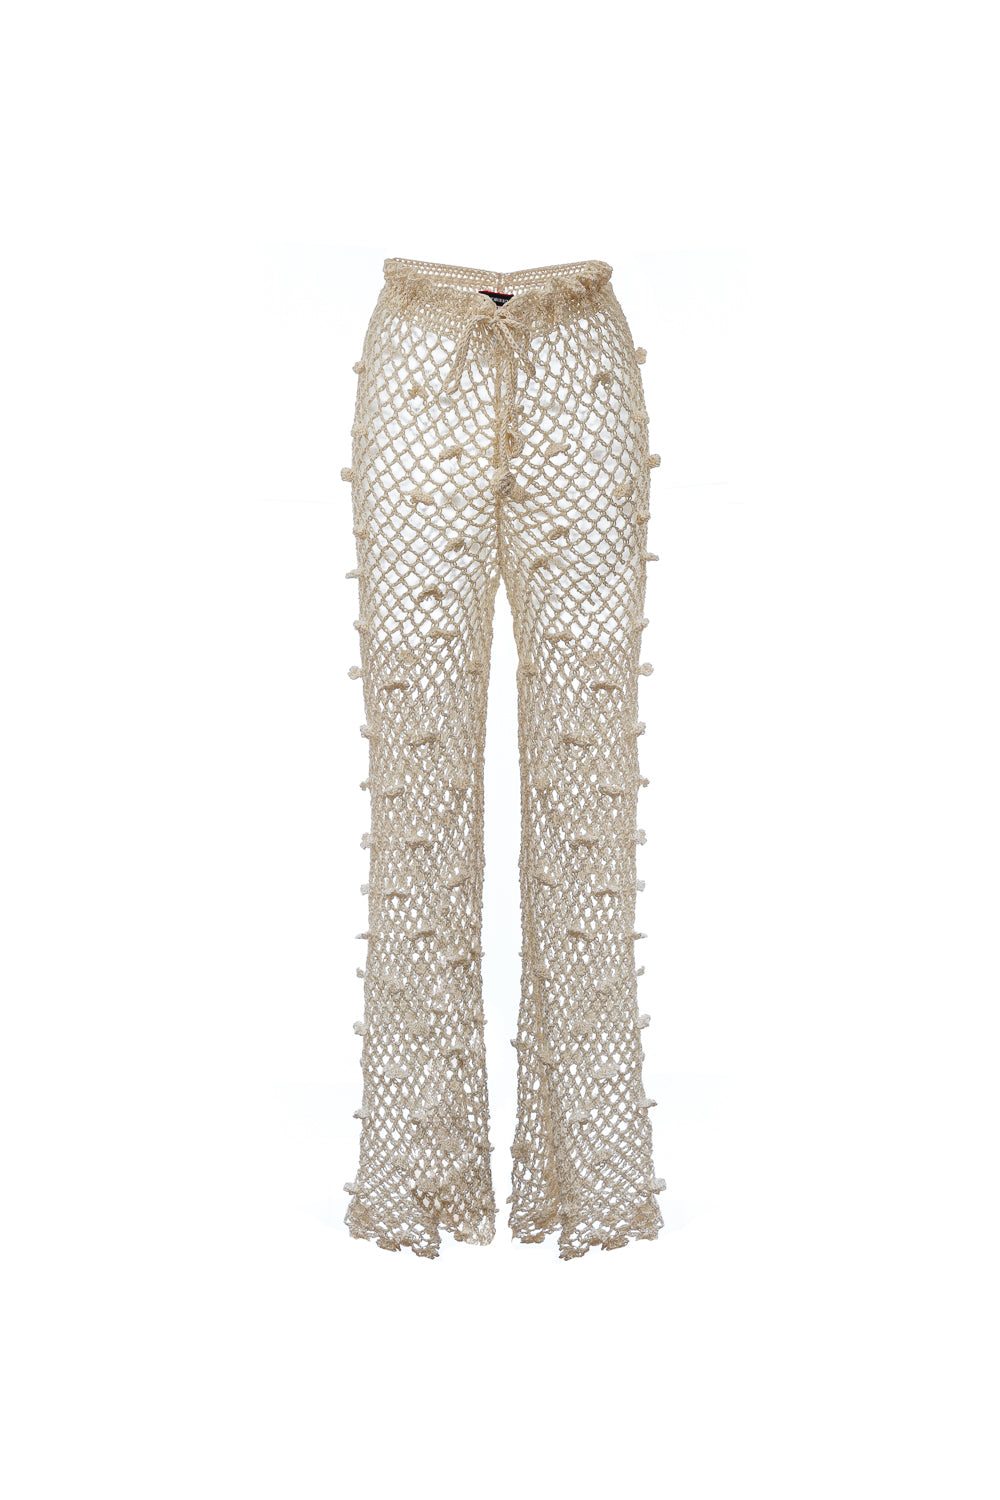 Shop Andreeva Women's White Handmade Crochet Pants